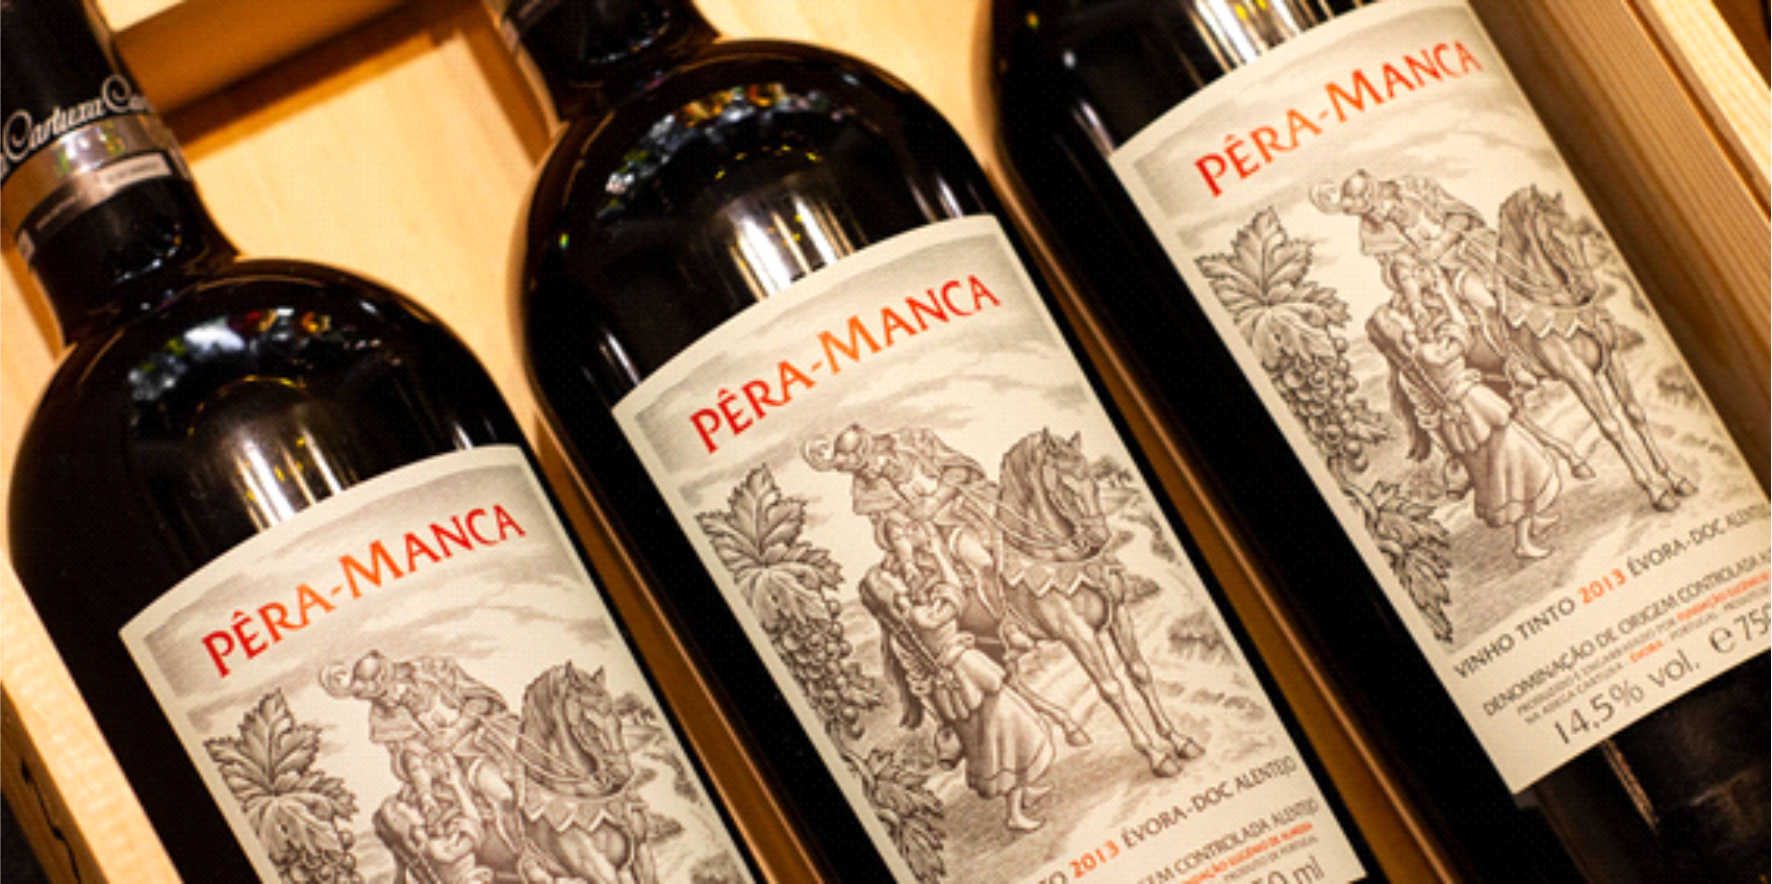 Pra Manca: O que torna esse vinho da Cartuxa to especial?